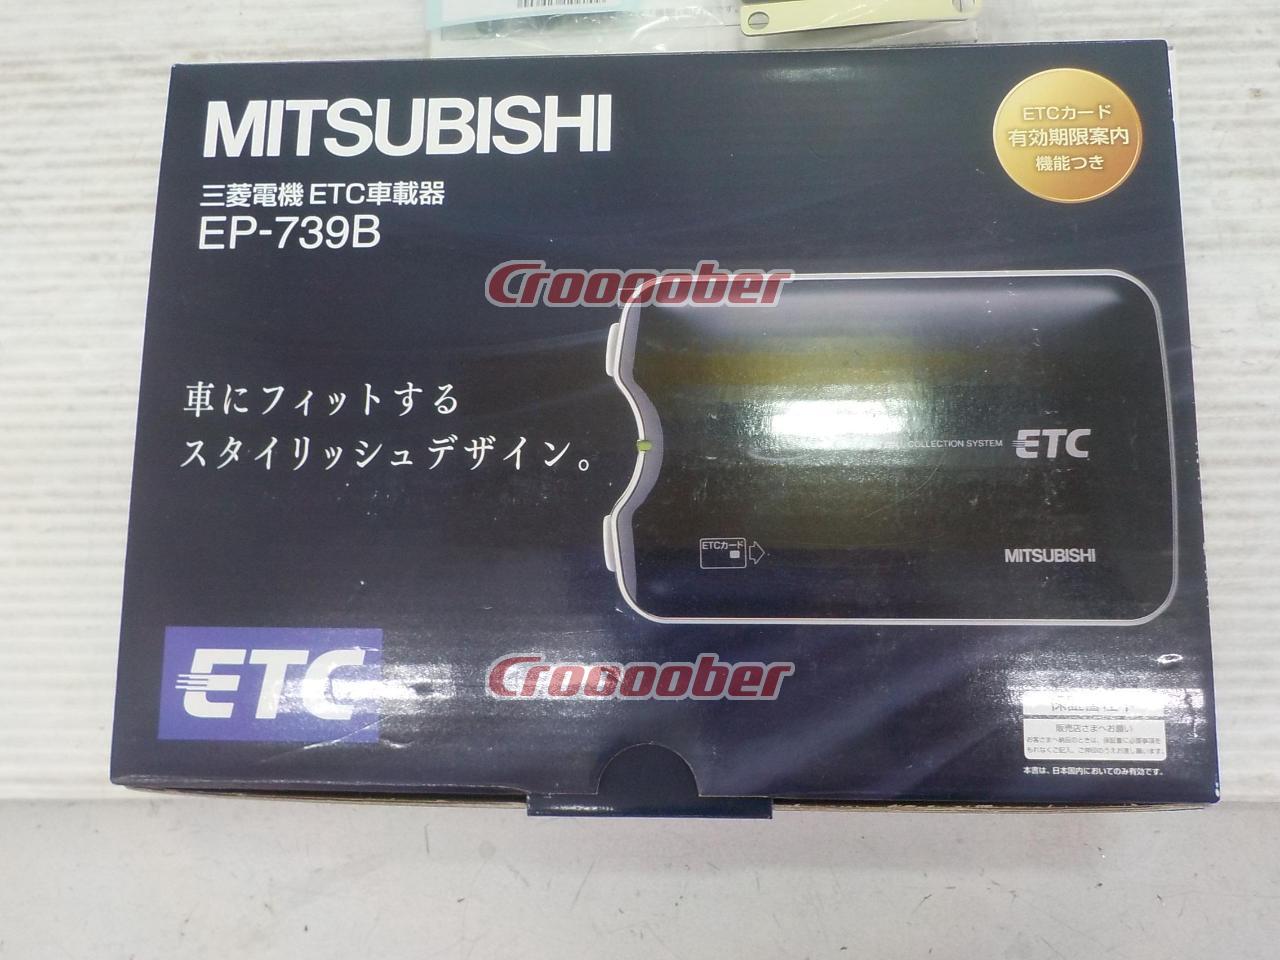 新しいブランド ETC車載器・ETC・MITSUBISHI - ETC - www 